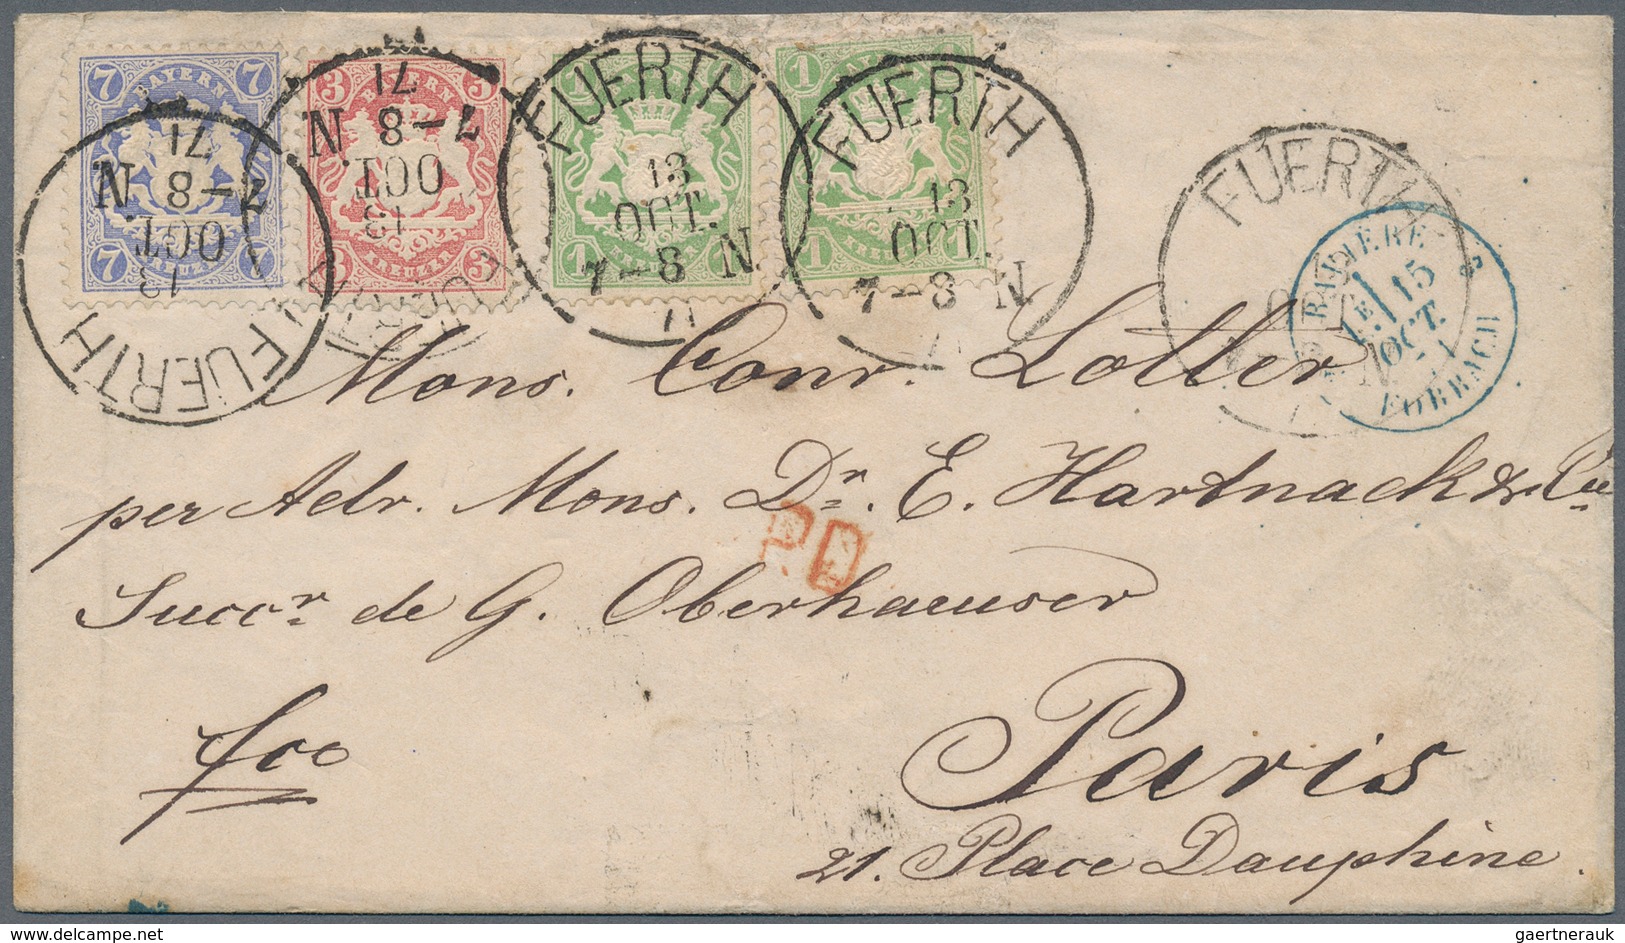 31198 Bayern - Marken und Briefe: 1850/1900 (ca.), schöner Briefposten mit sicher über 200 Belegen ab ein